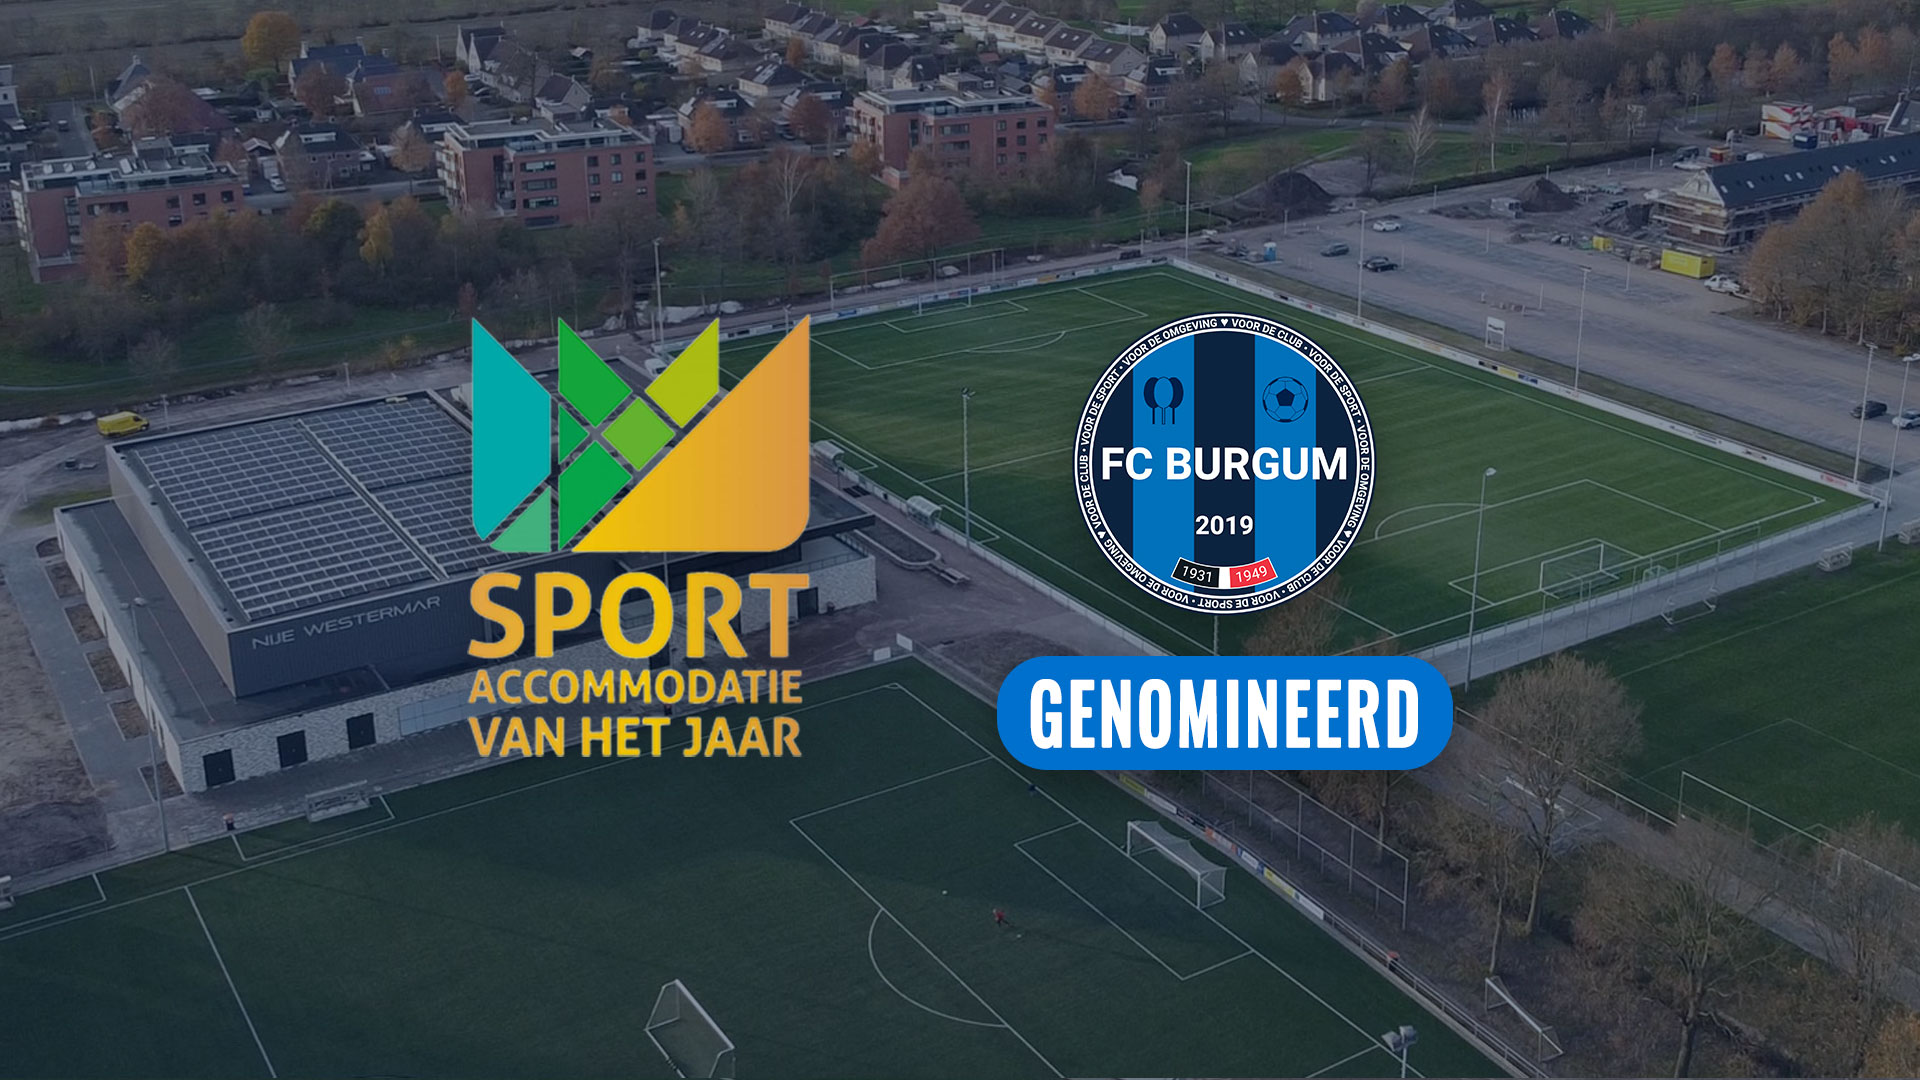 We zijn enorm trots: Nije Westermar is genomineerd voor meest duurzame sportaccommodatie